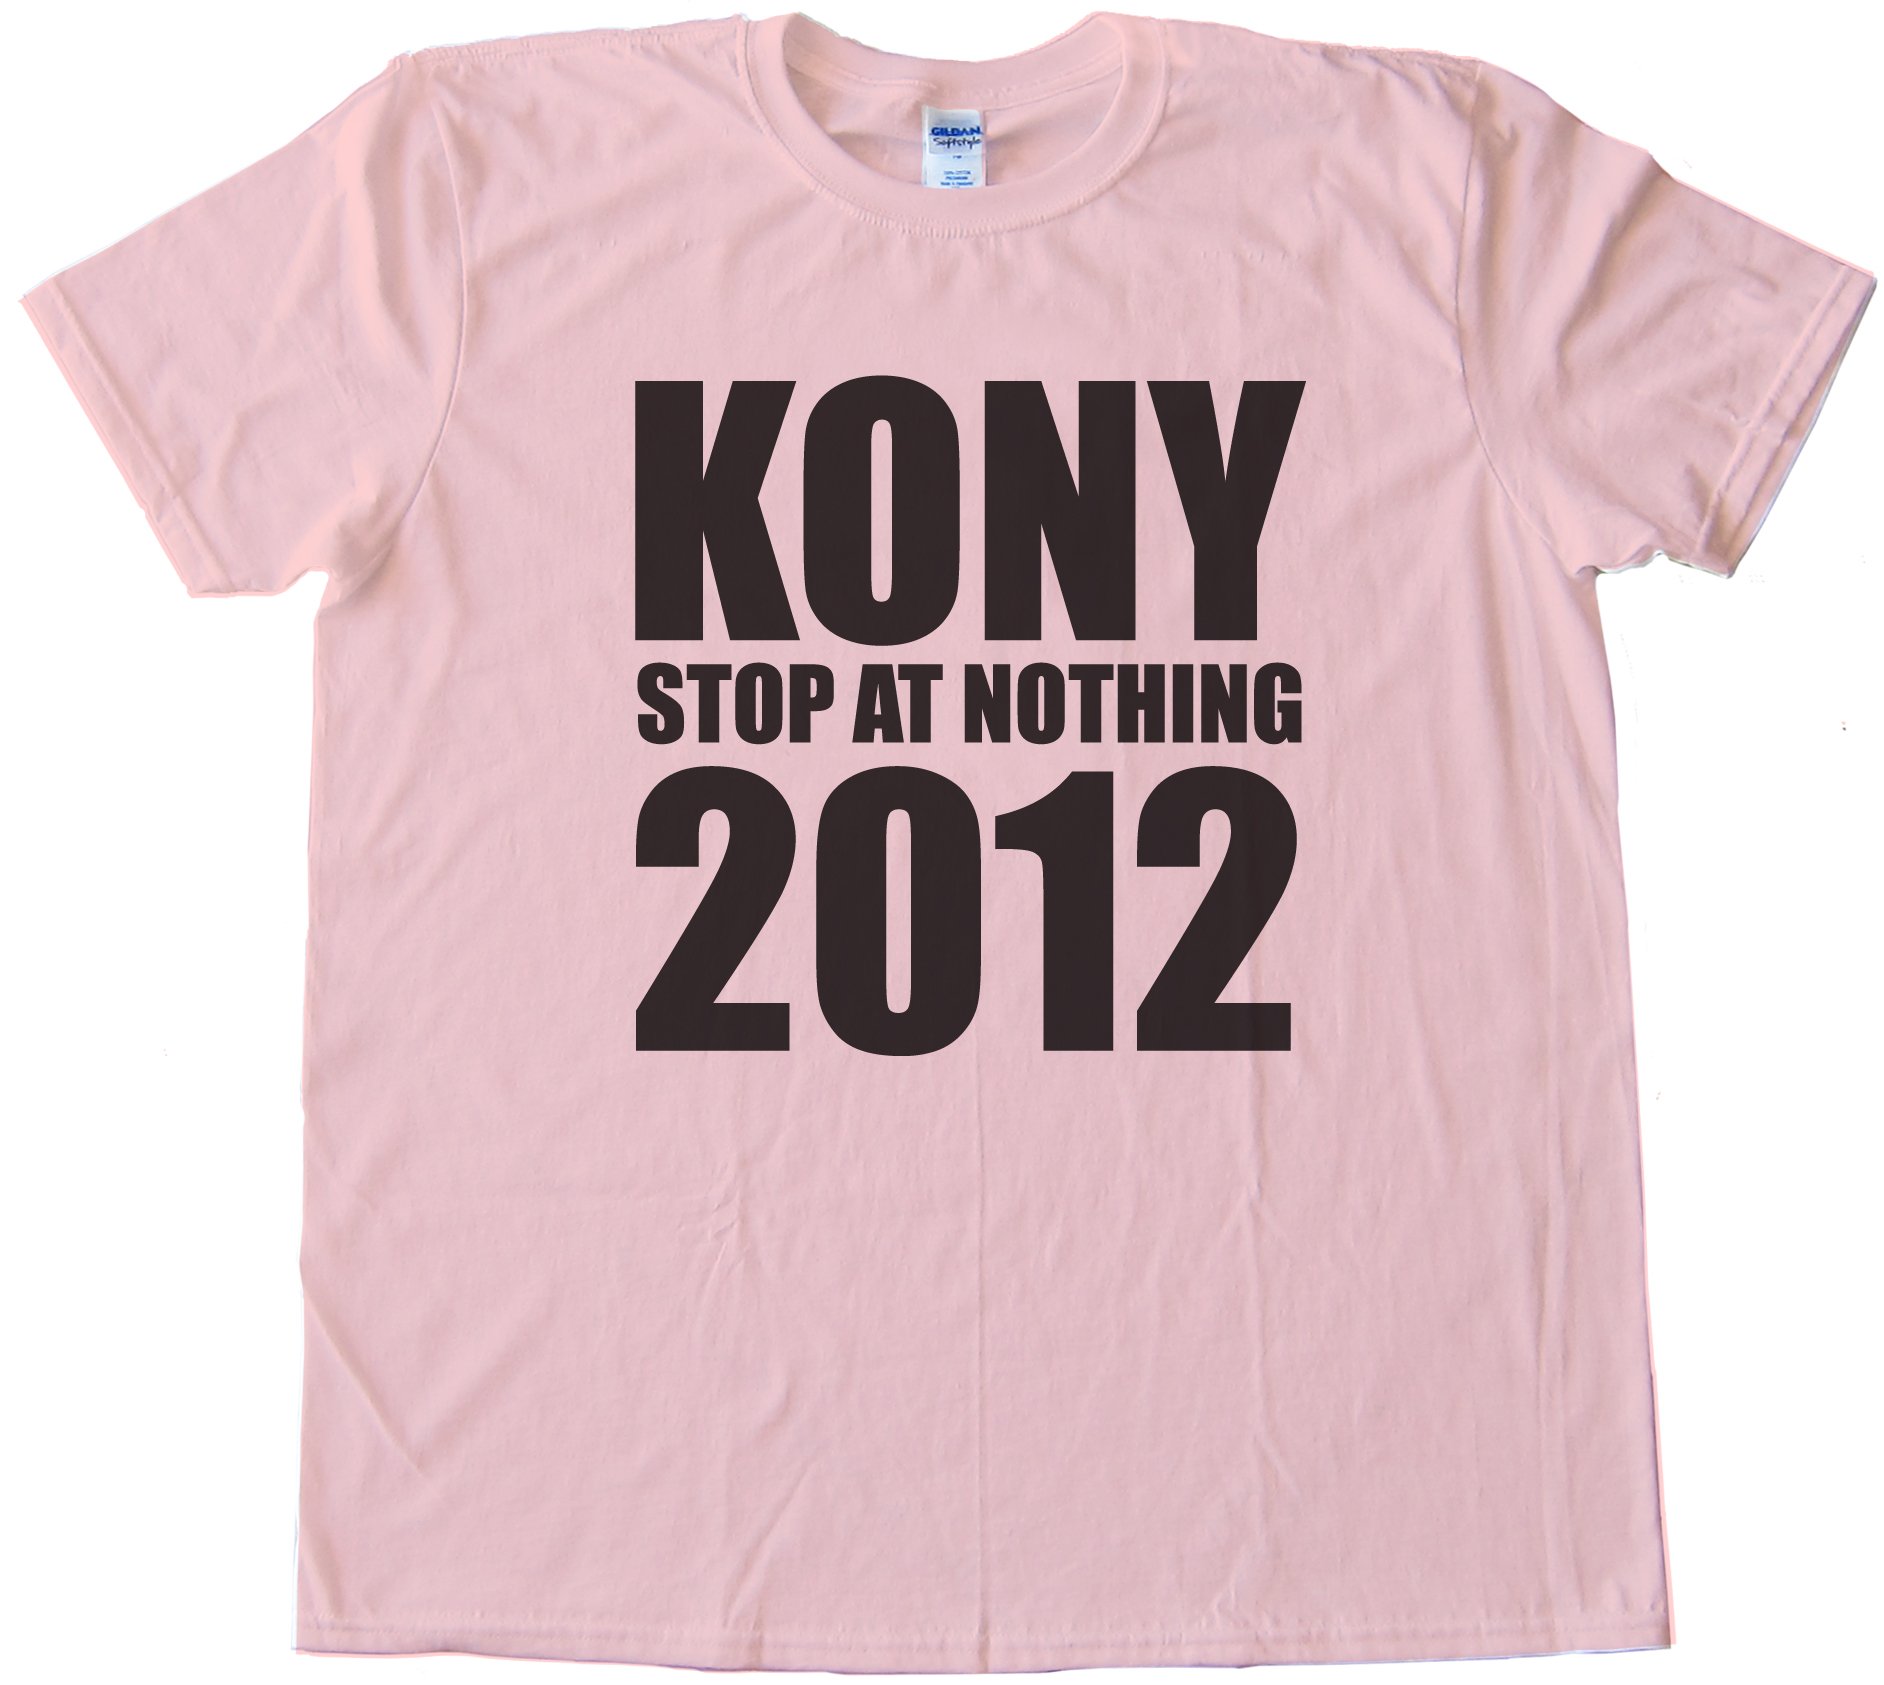 Kony Stop At Nothing 2012 Tee Shirt